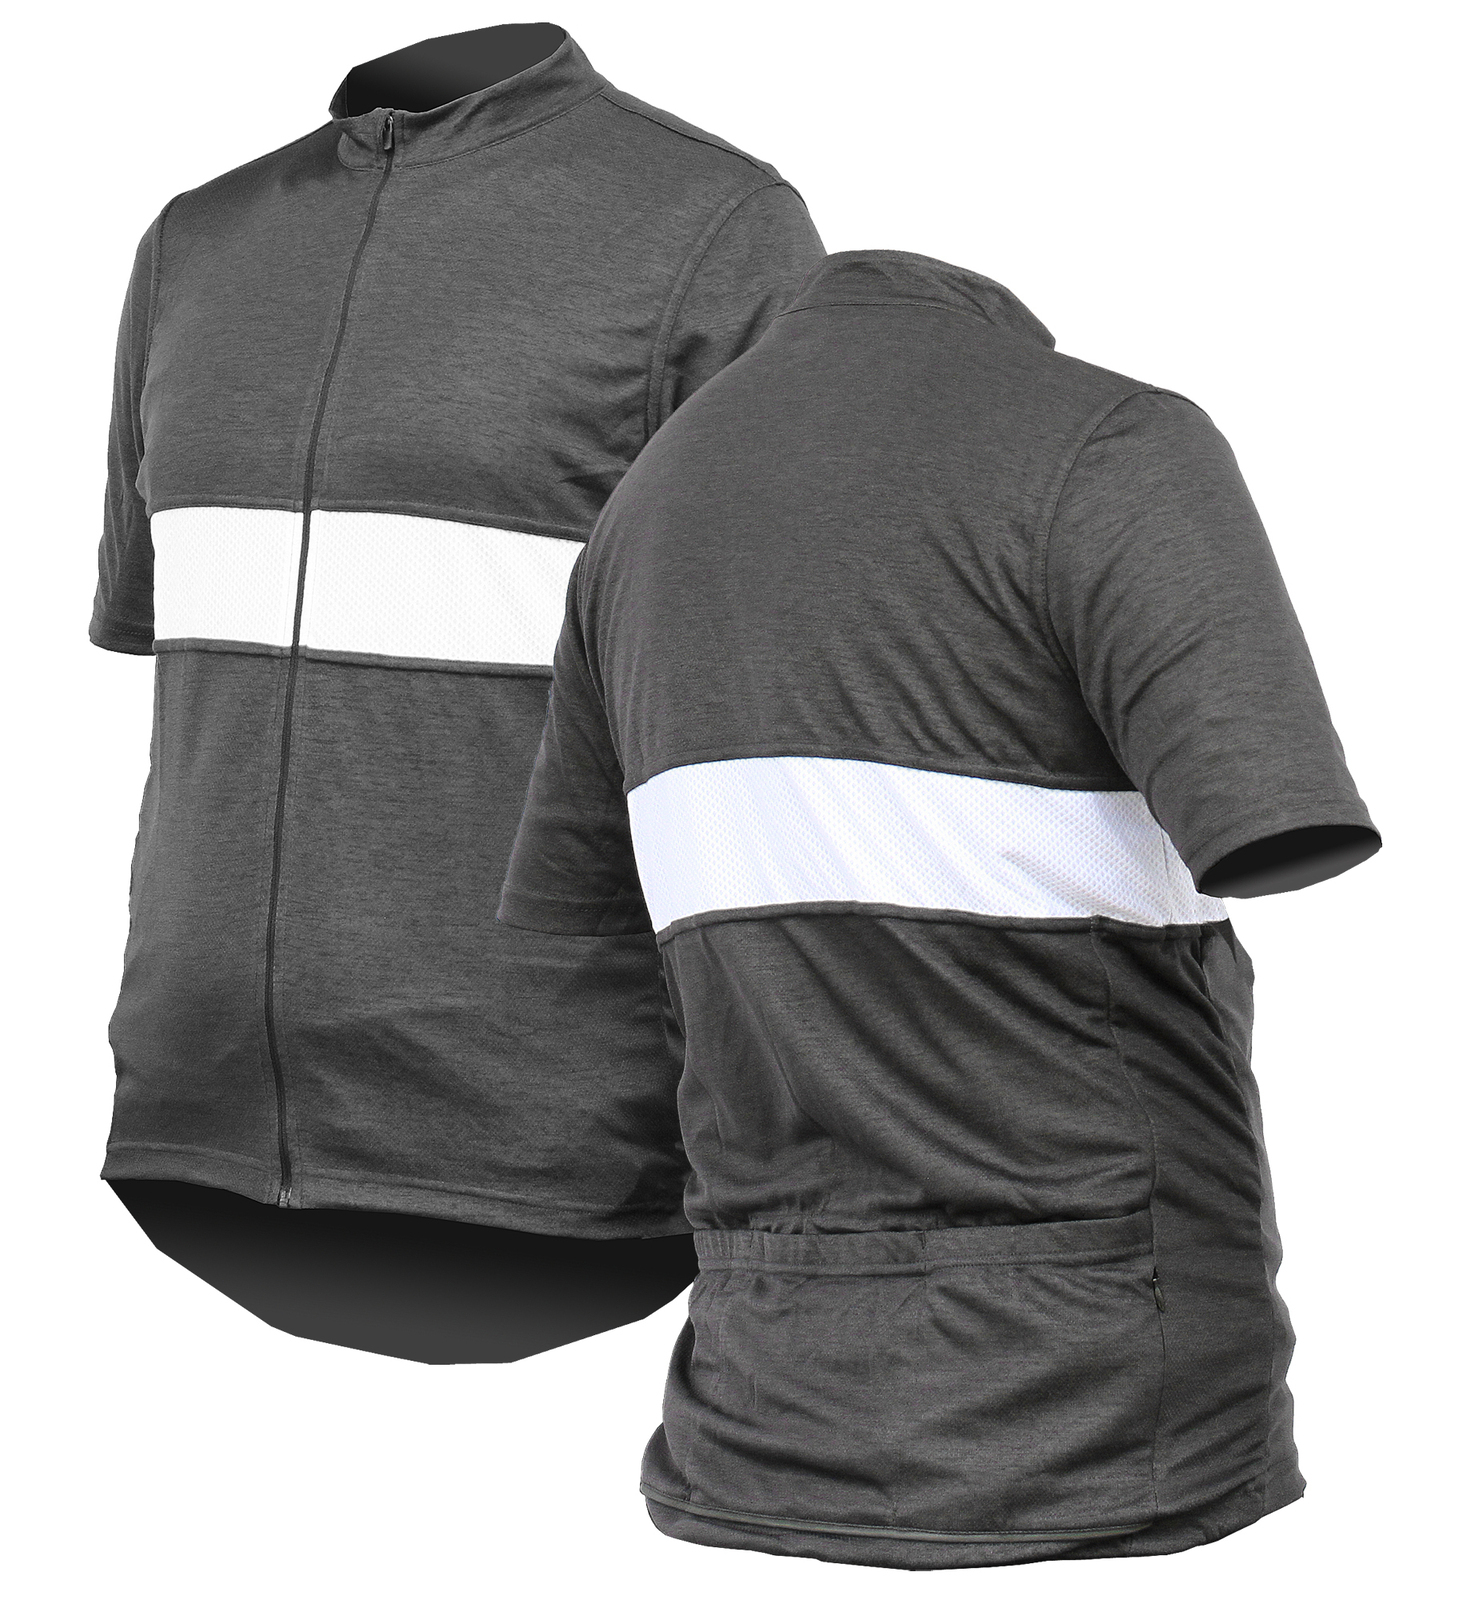 Jackbroad Premium Quality Cycling Jersey Grey XXXL